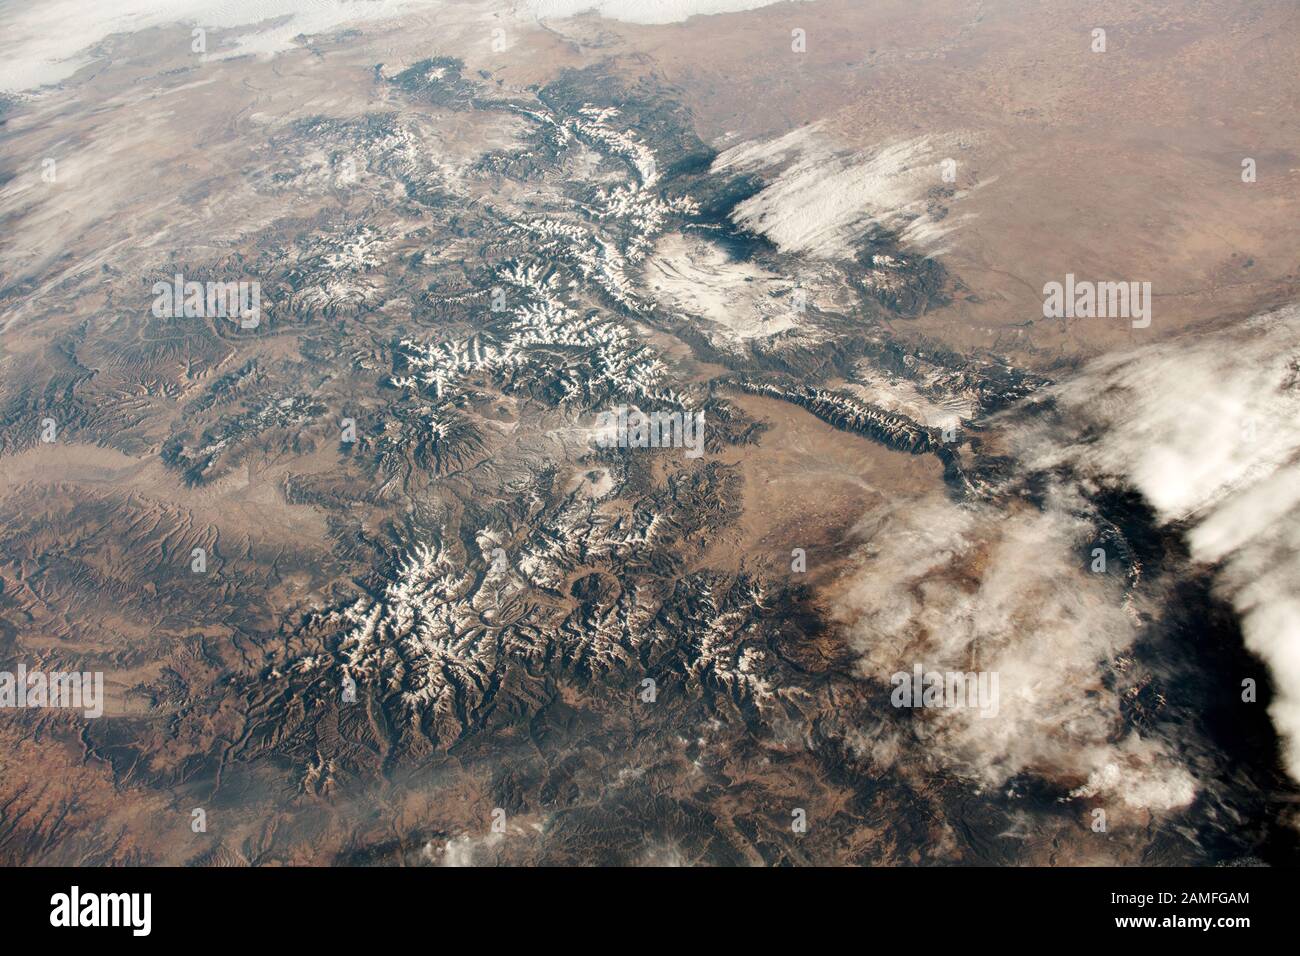 NASA-Satellitenbild der Rocky Mountains und die Tiefebene, Front Range, San Juan und Sangre de Christo - Rocky Mountains in Colorado, USA Stockfoto